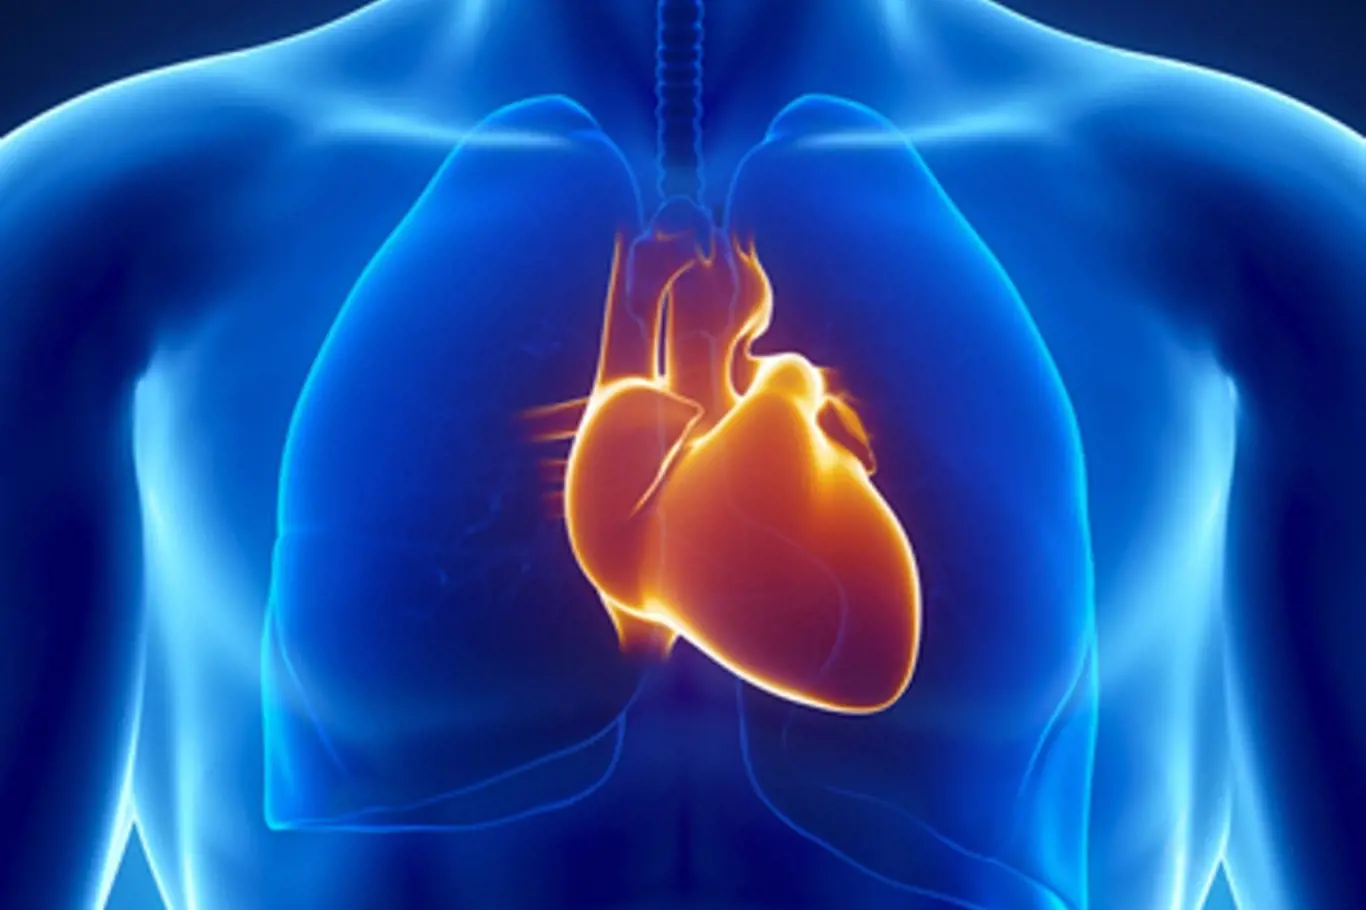 Projevy fibrilace síní si podle průzkumu téměř 40 procent lidí plete s projevy infarktu. 